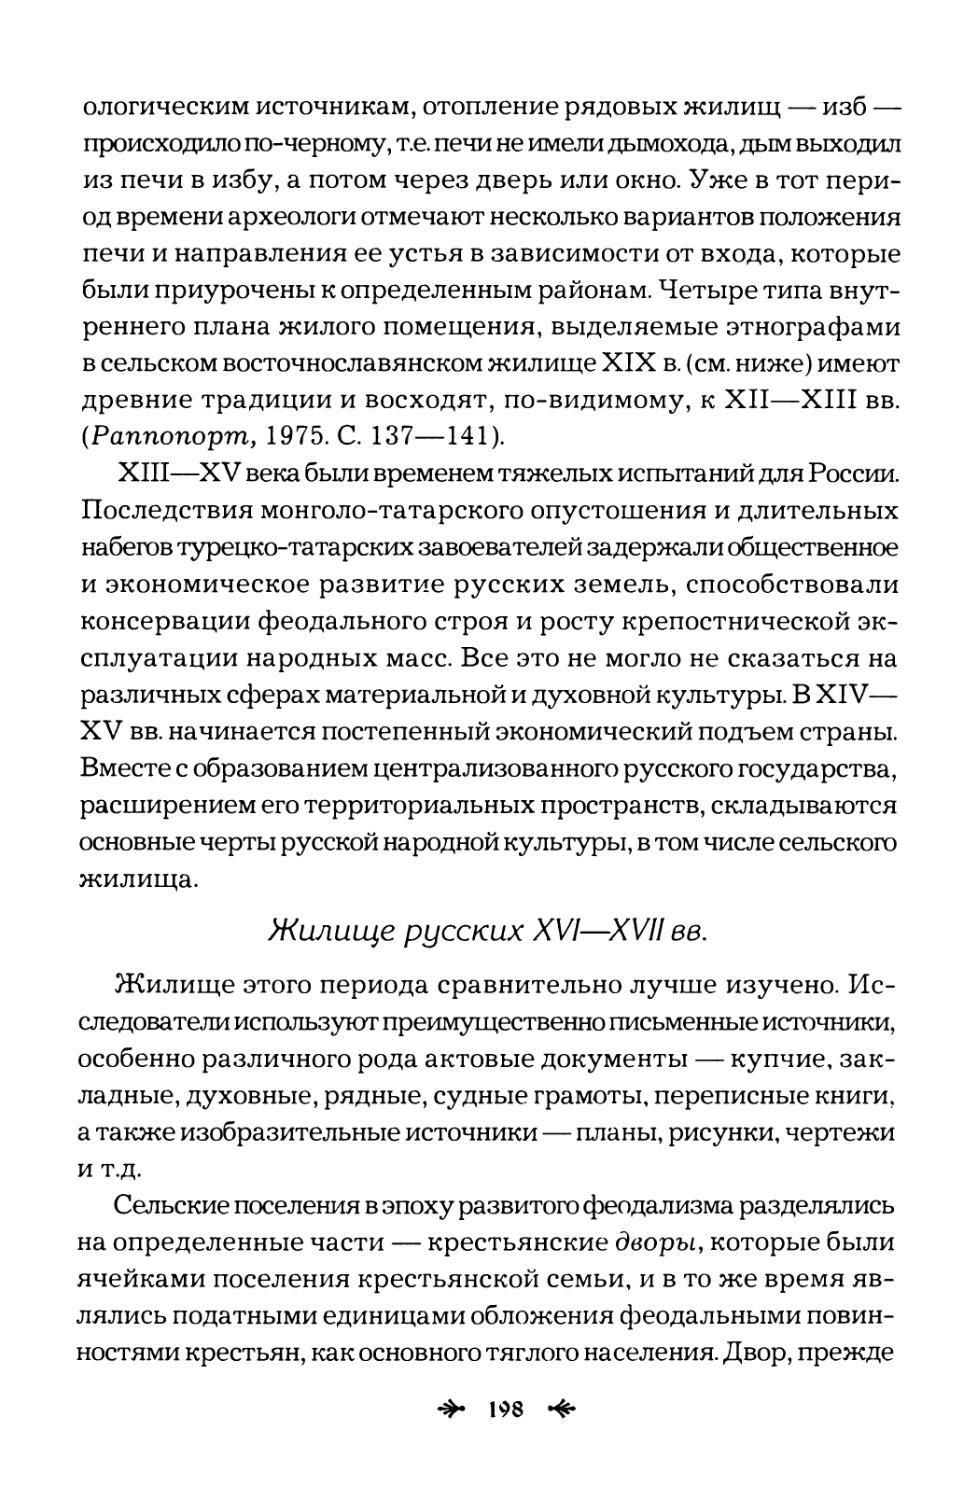 Жилище  русских  XVI—XVII  вв